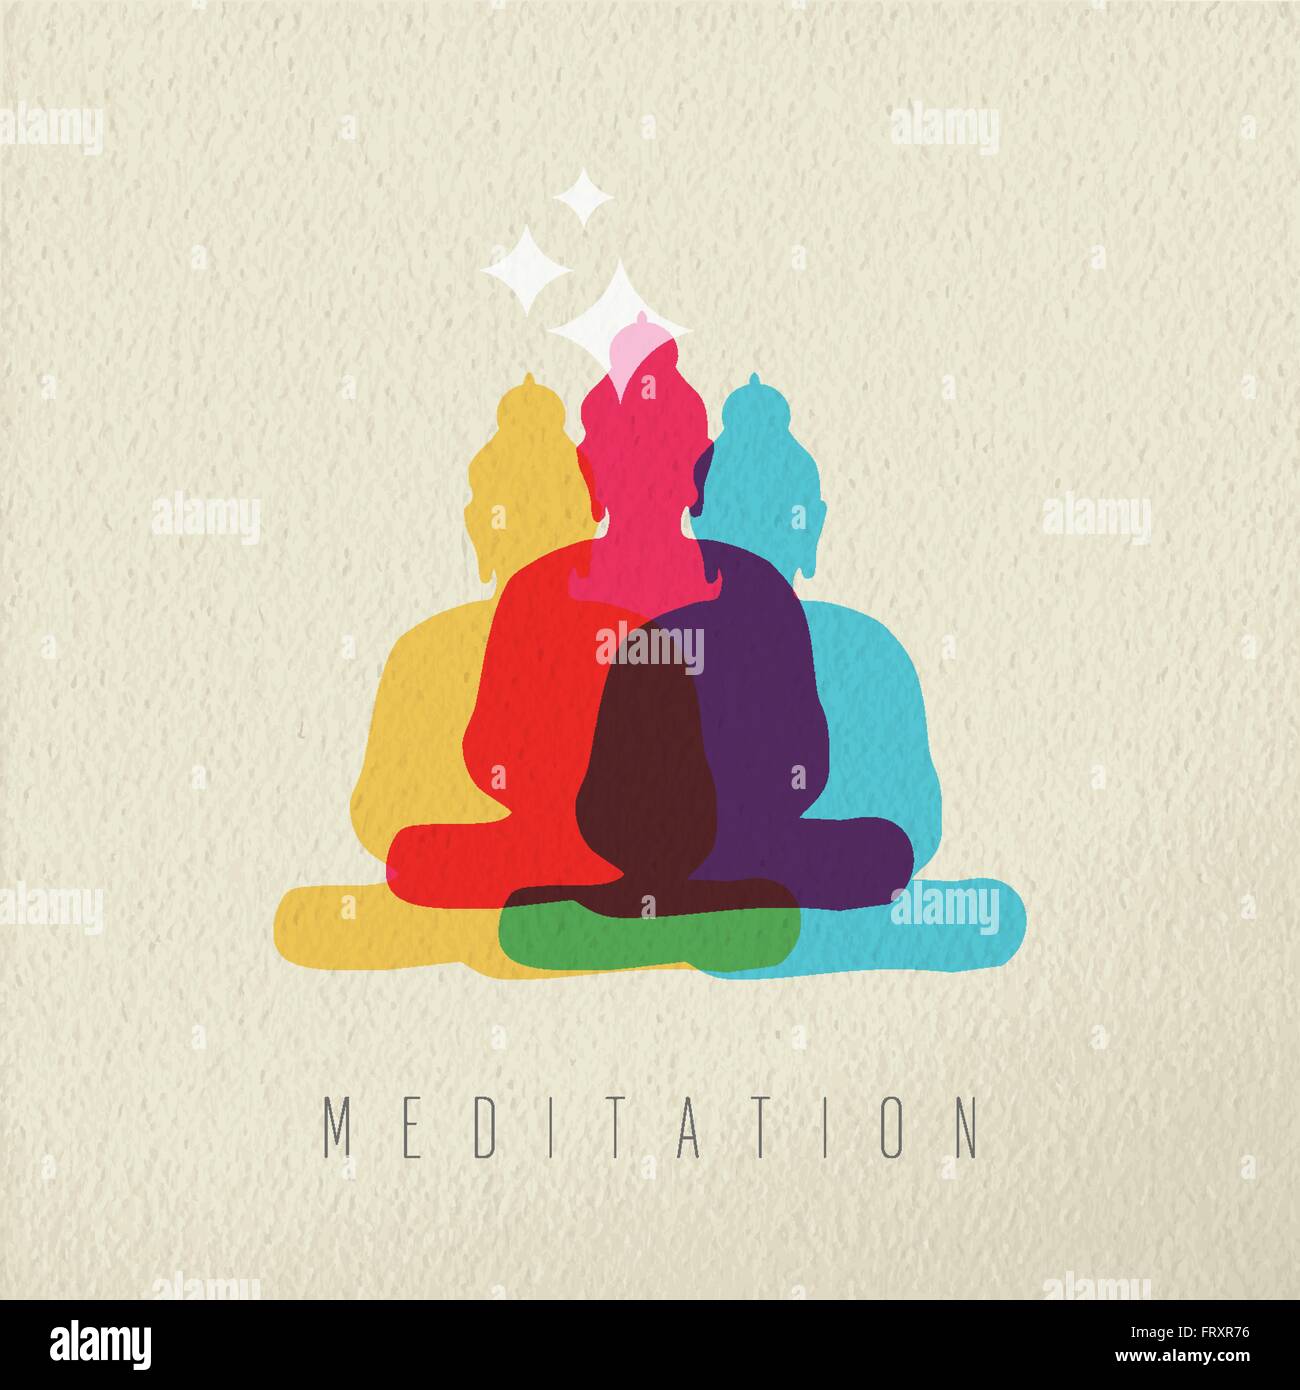 Concept de méditation icône, illustration de la culture asiatique dieu Bouddha statue en style coloré, plus de texture background. Vecteur EPS10 Illustration de Vecteur